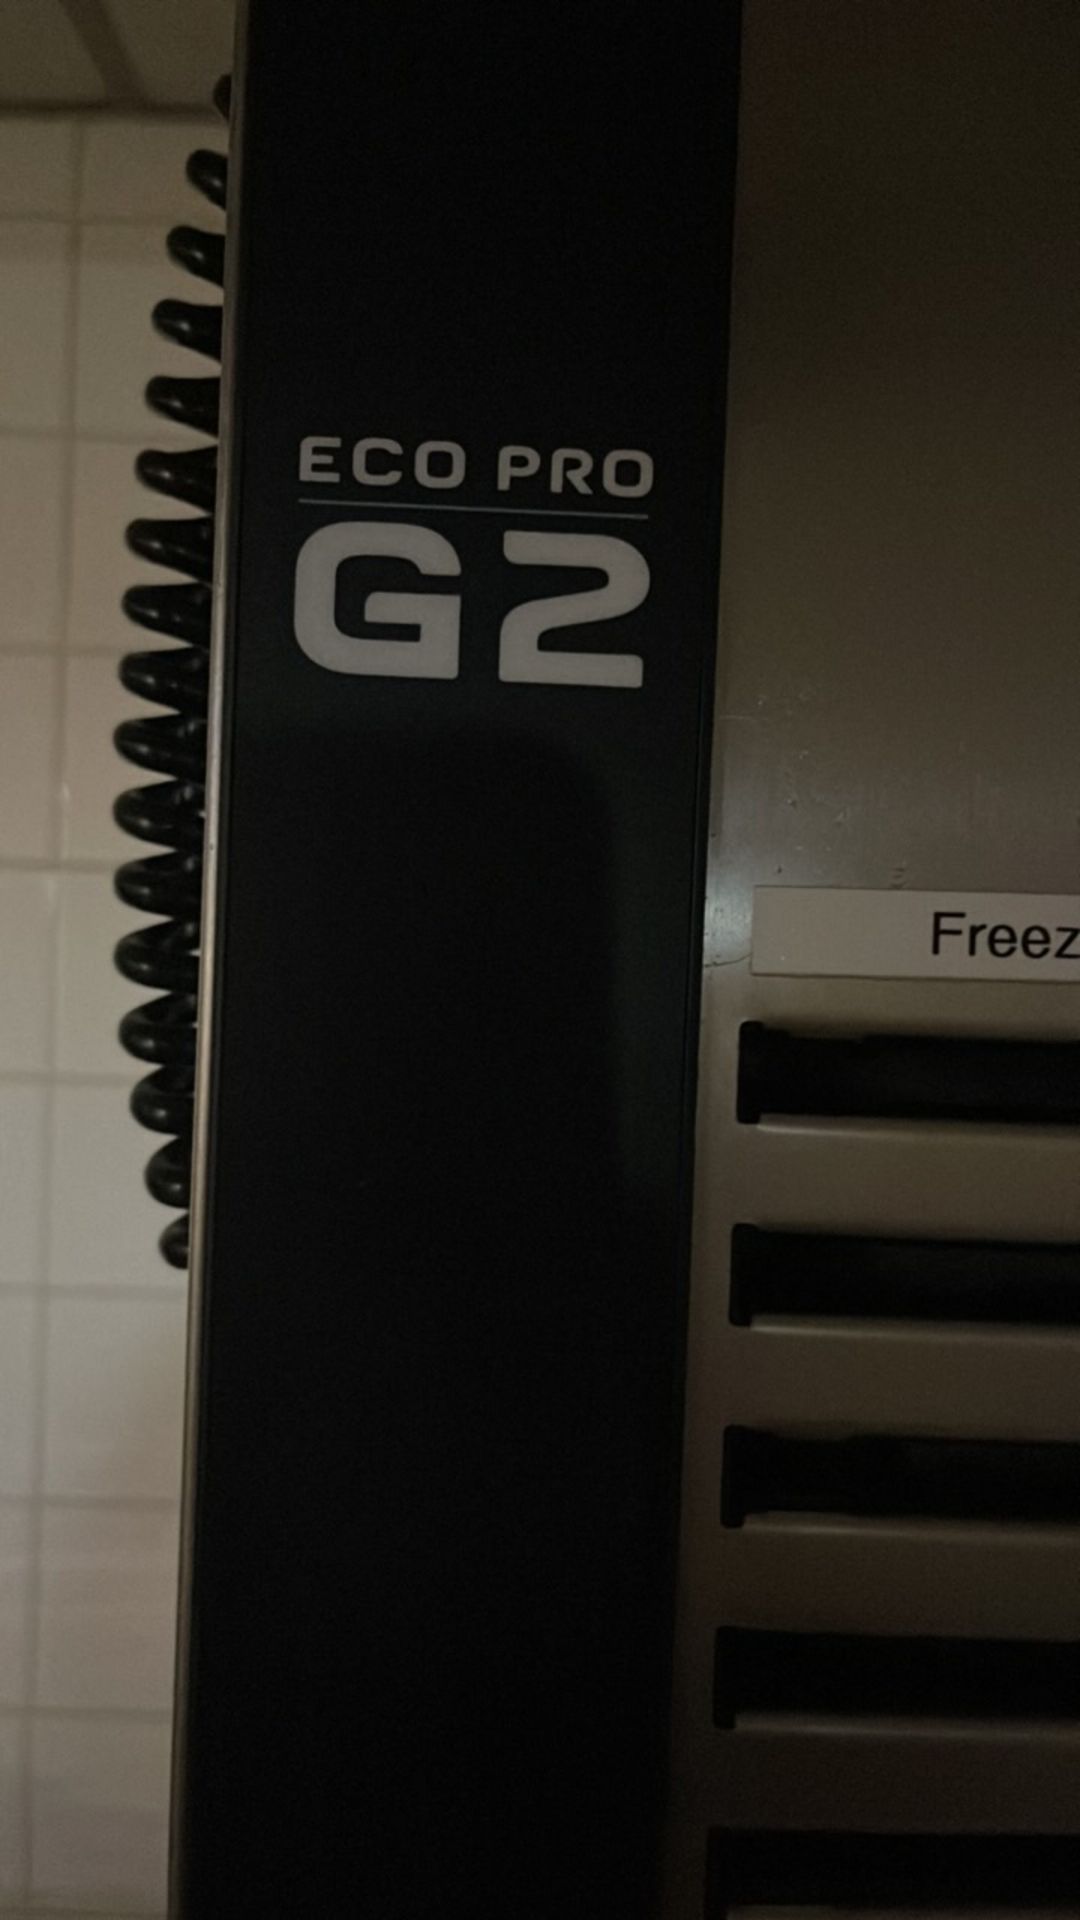 FOSTER Eco Pro G2 Freezer - Image 2 of 7